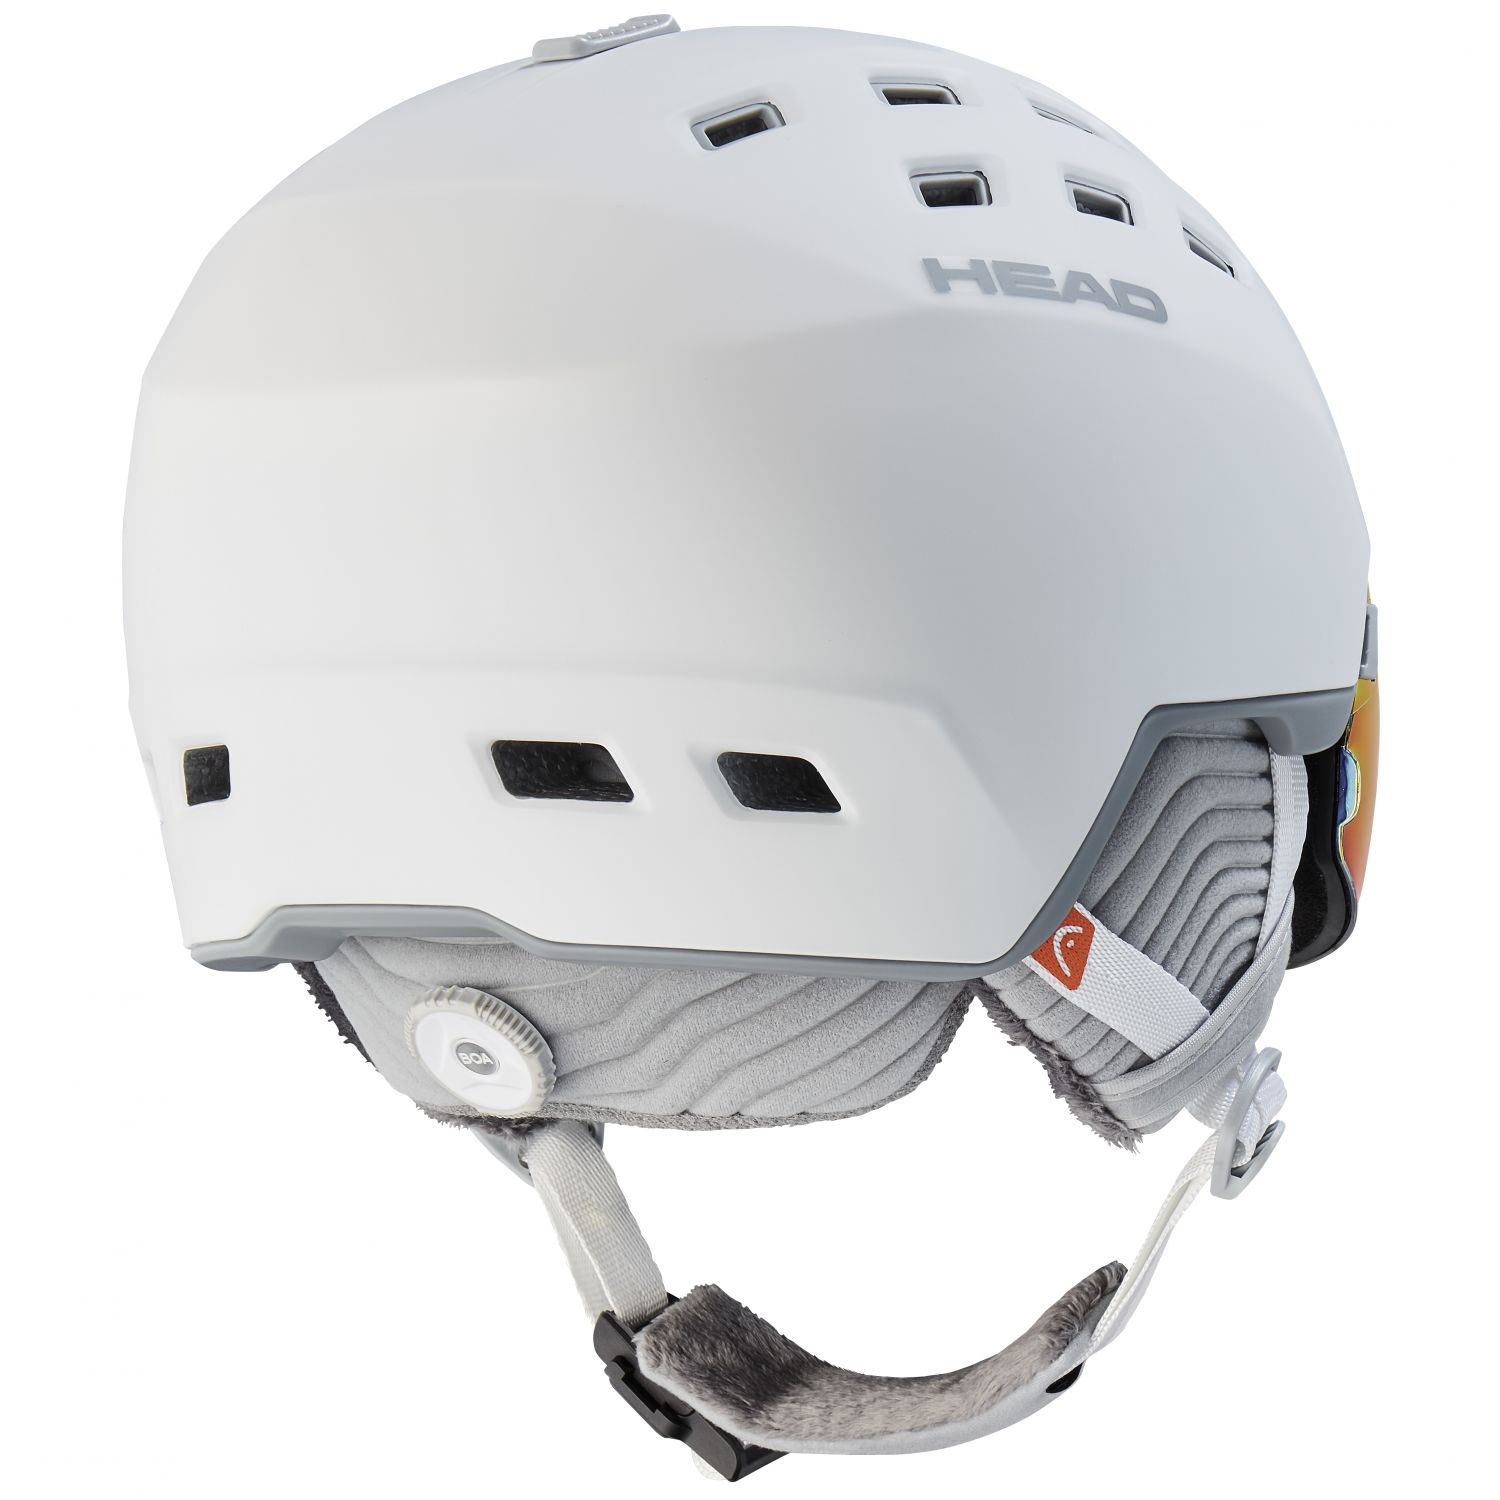 Head Rachel 5K Pola, visor ski helmet, white